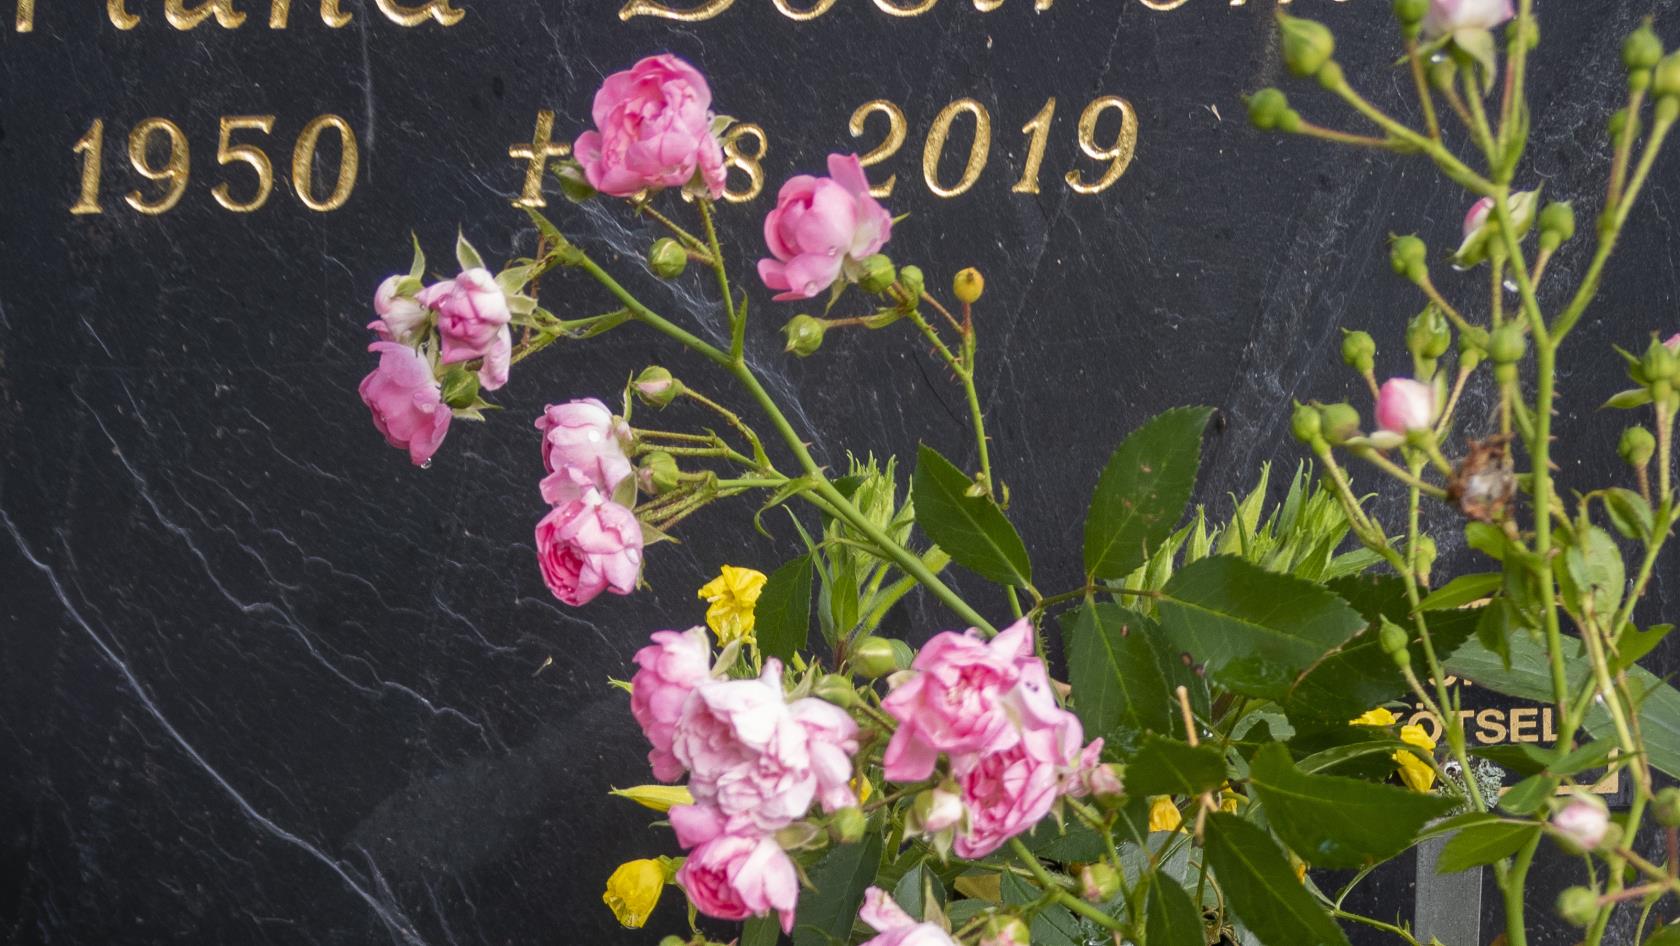 Blommor och ett ljusblått hjärta vid en gravsten.